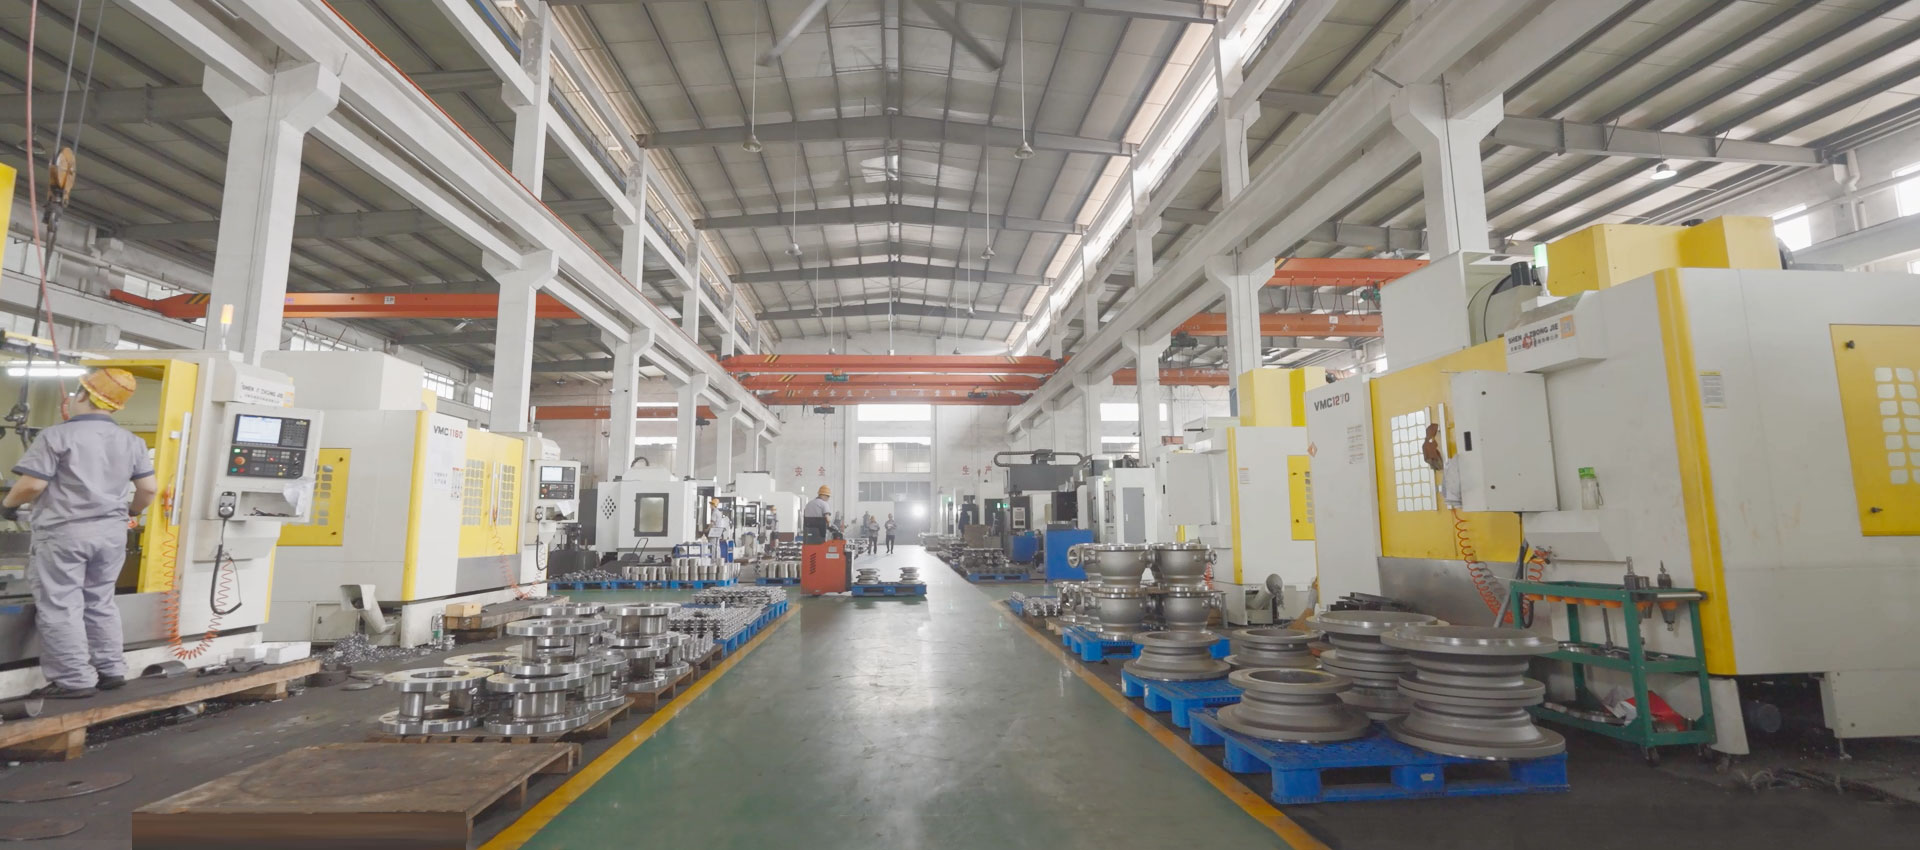 Fabrica Zhejiang Liangyi Valve Co., Ltd